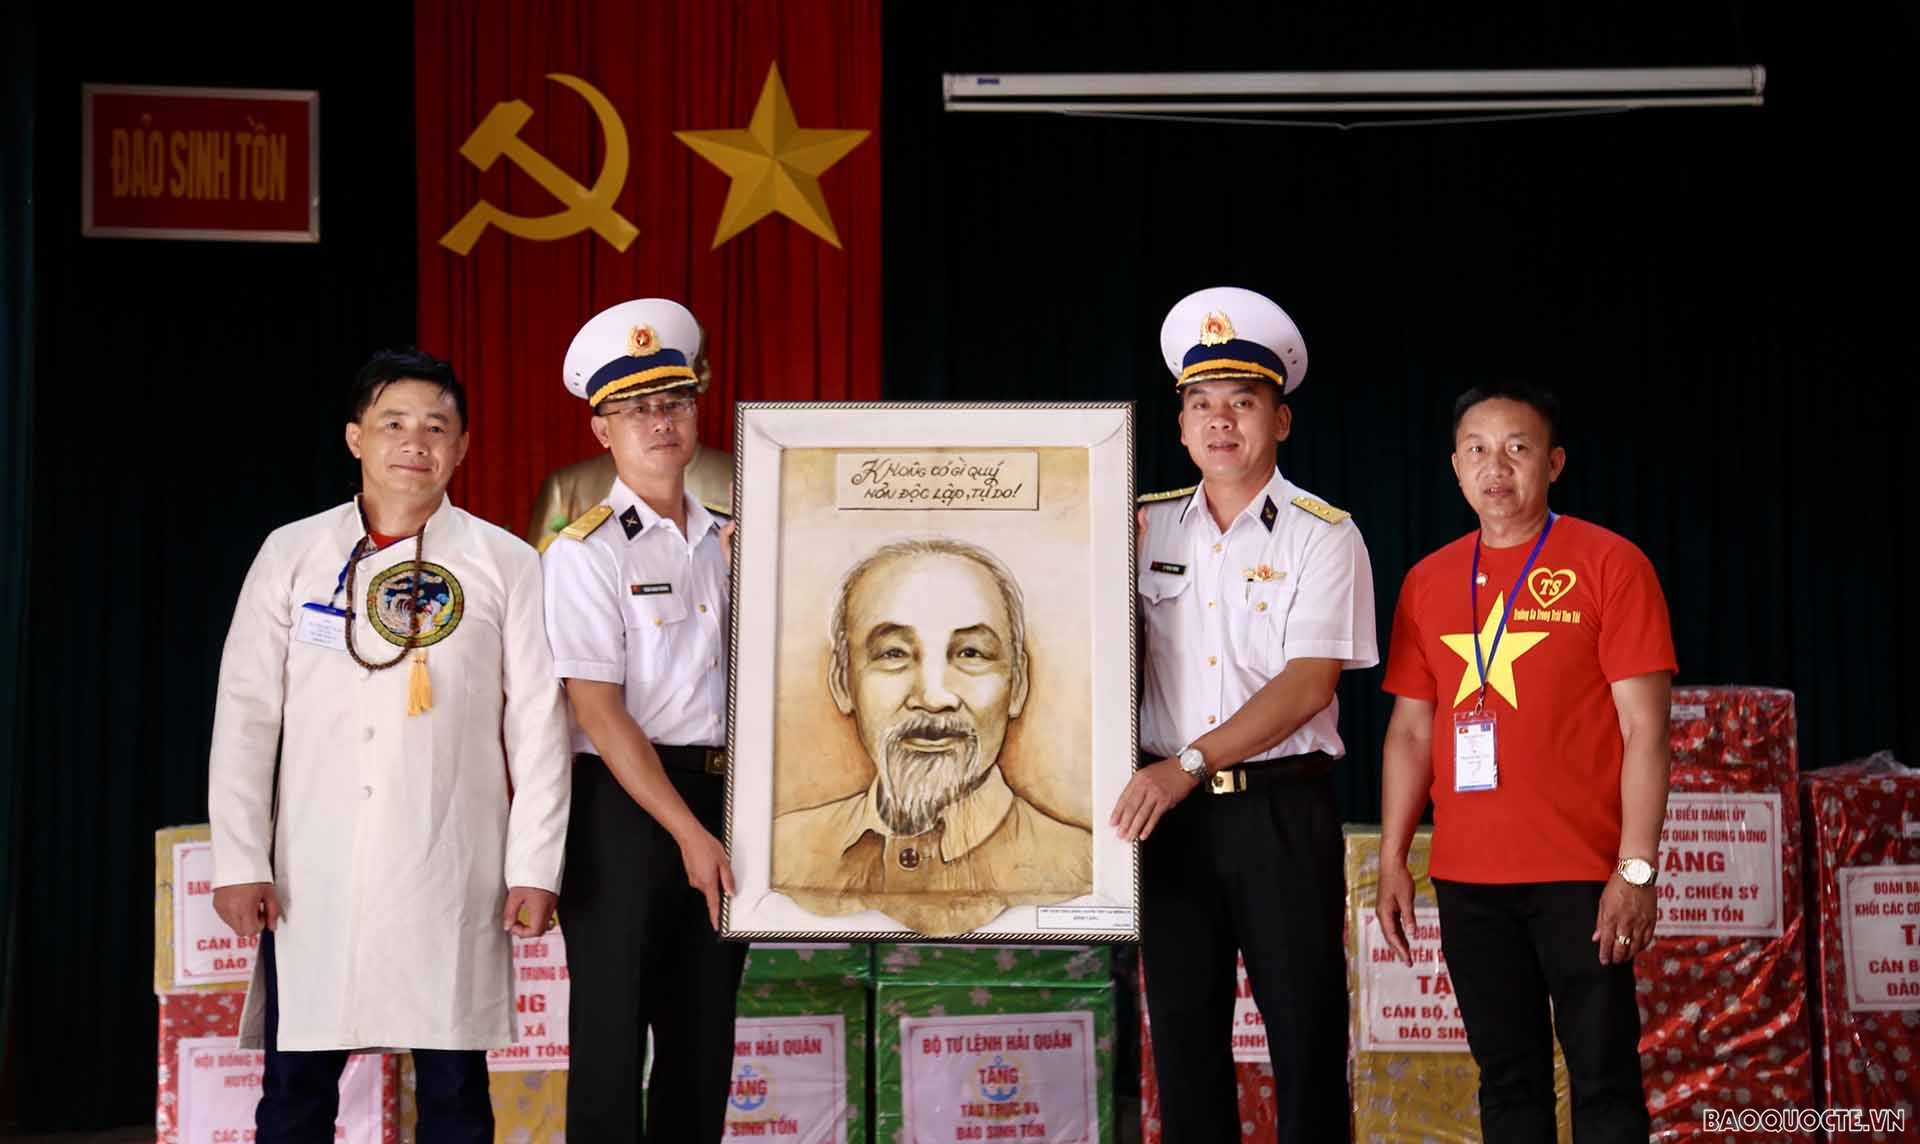 Chủ tịch Hội người Việt Nam tại Mông Cổ Nguyễn Huy Tuấn (bên trái) thay mặt cộng đồng và người dân Mông Cổ tặng tranh cho cán bộ, chiến sĩ và nhân dân Trường Sa. (Ảnh: Duy Quang)